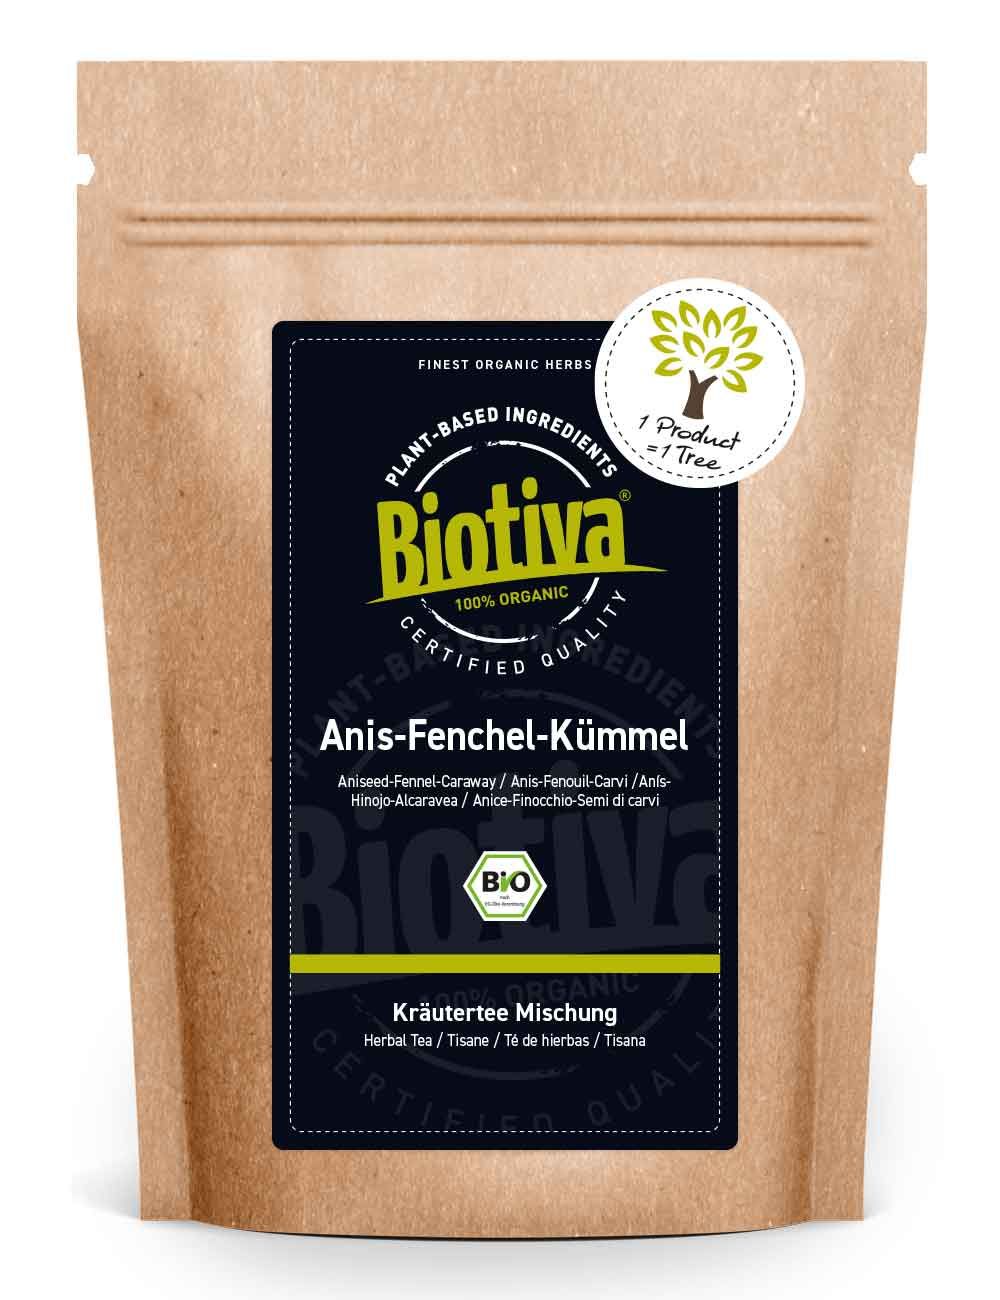 Anis-Fenchel-Kümmel Tee Bio